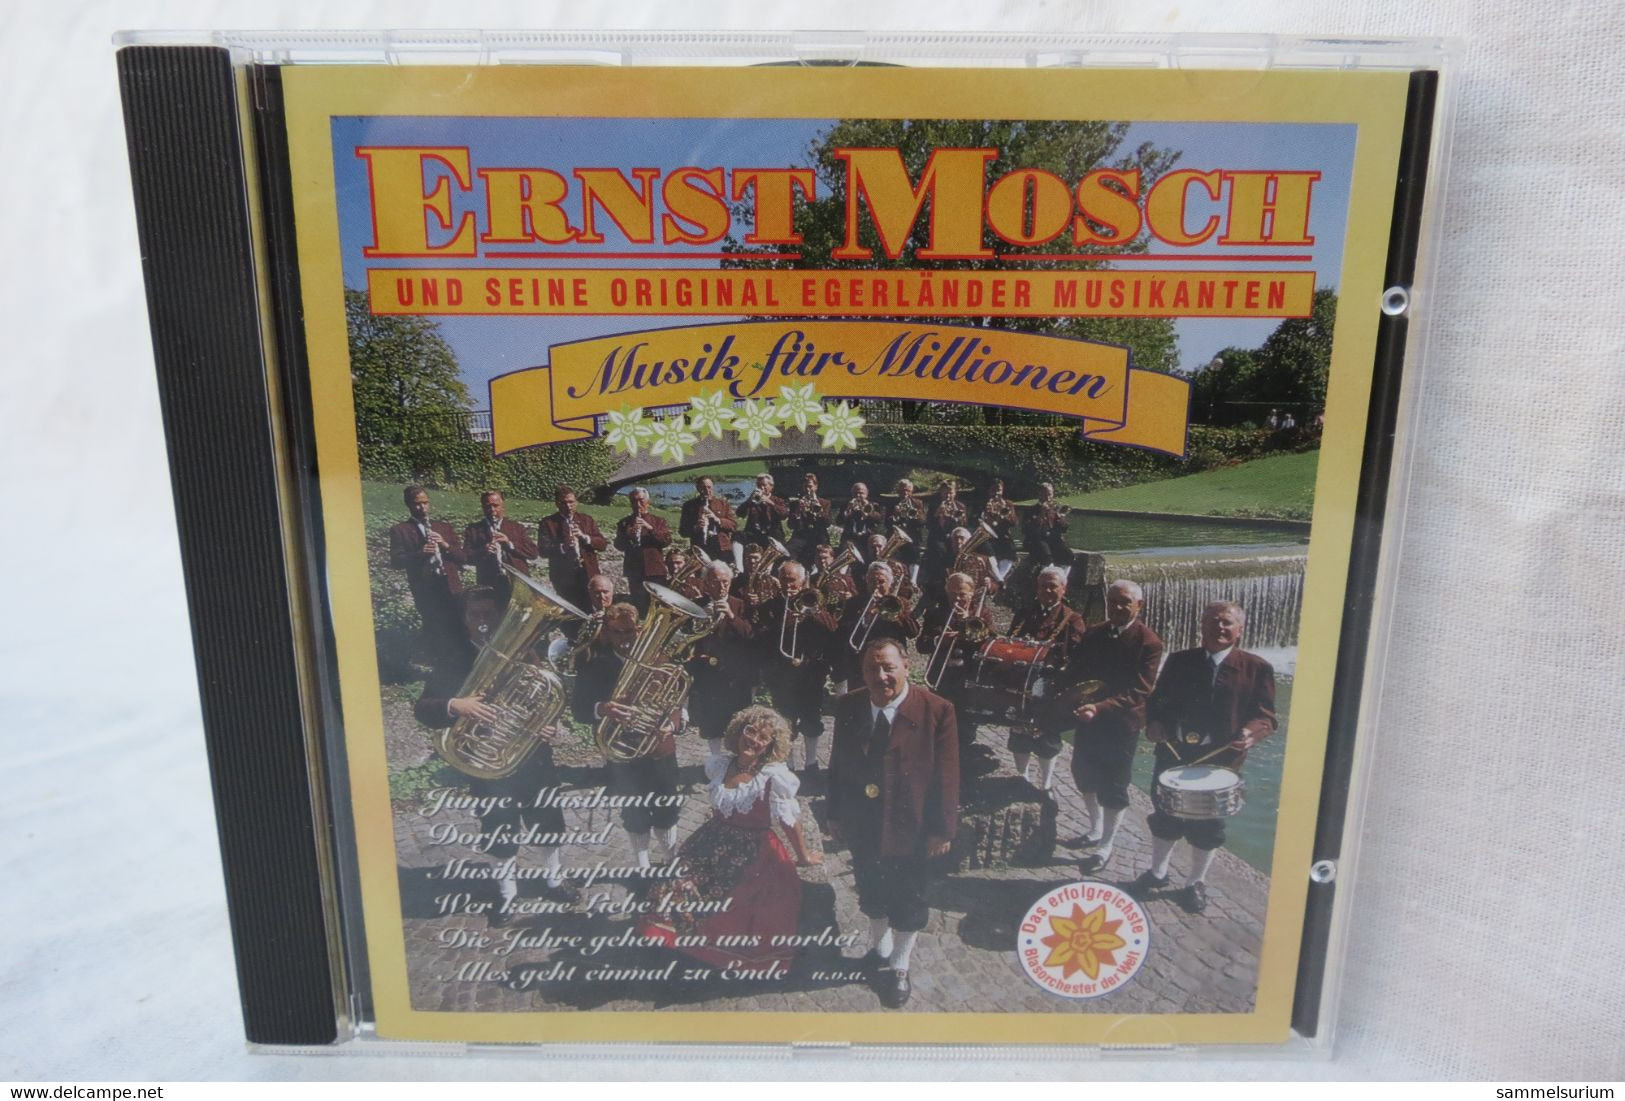 CD "Ernst Mosch Und Seine Original Egerländer Musikanten" Musik Für Millionen - Autres - Musique Allemande